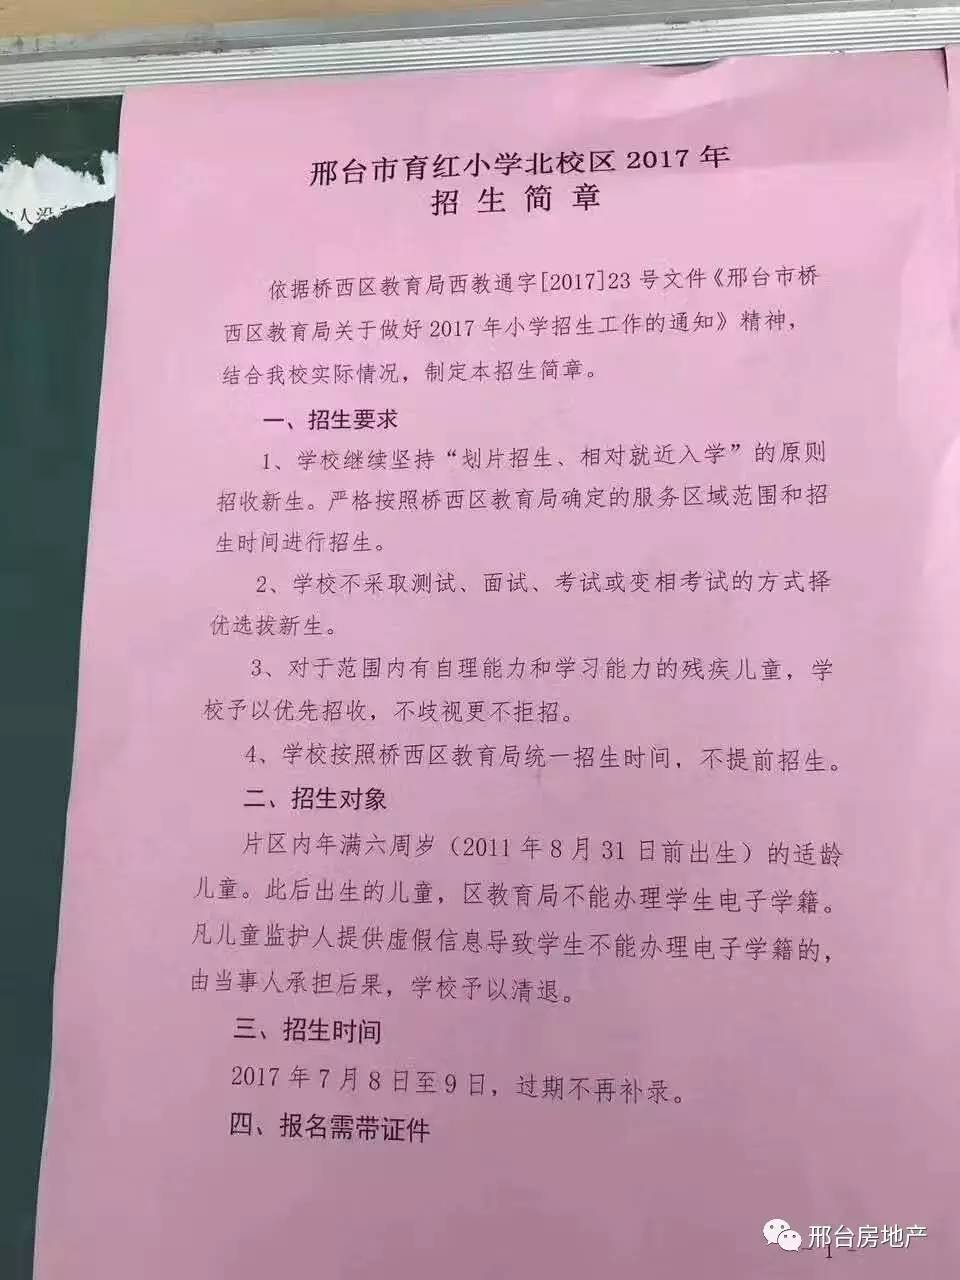 邢台市育红小学北校区2017招生简章(图)